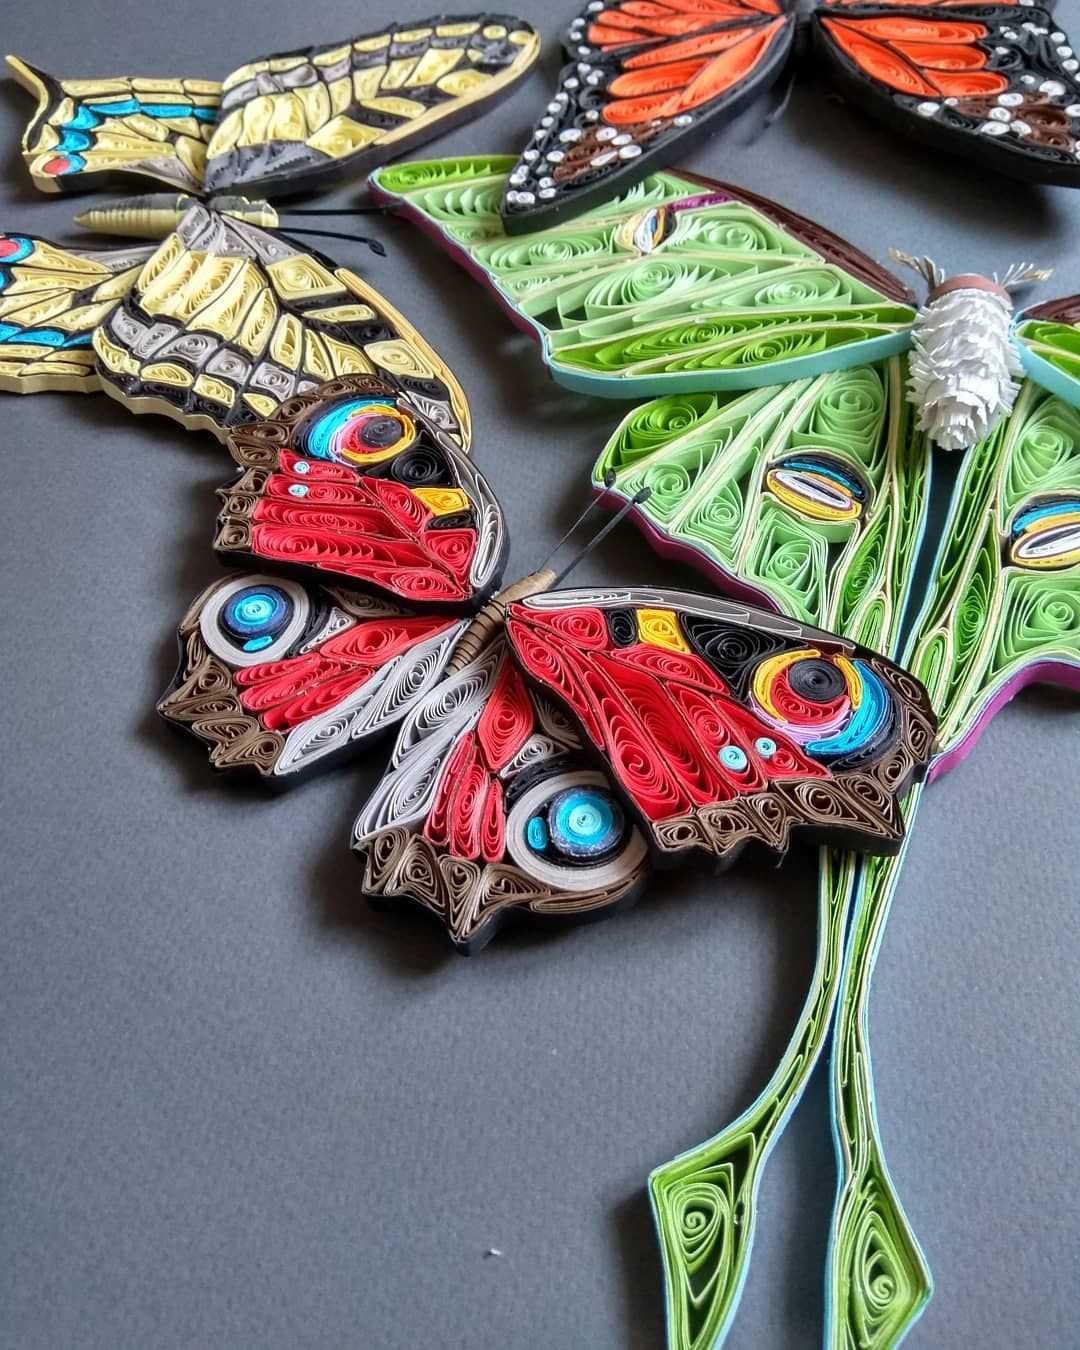 Бабочки в интерьере - идеи и фото Бабочки на стене своими руками Трафареты Бабочки по фен-шуй Композиции, картины, эффектные модные бабочки